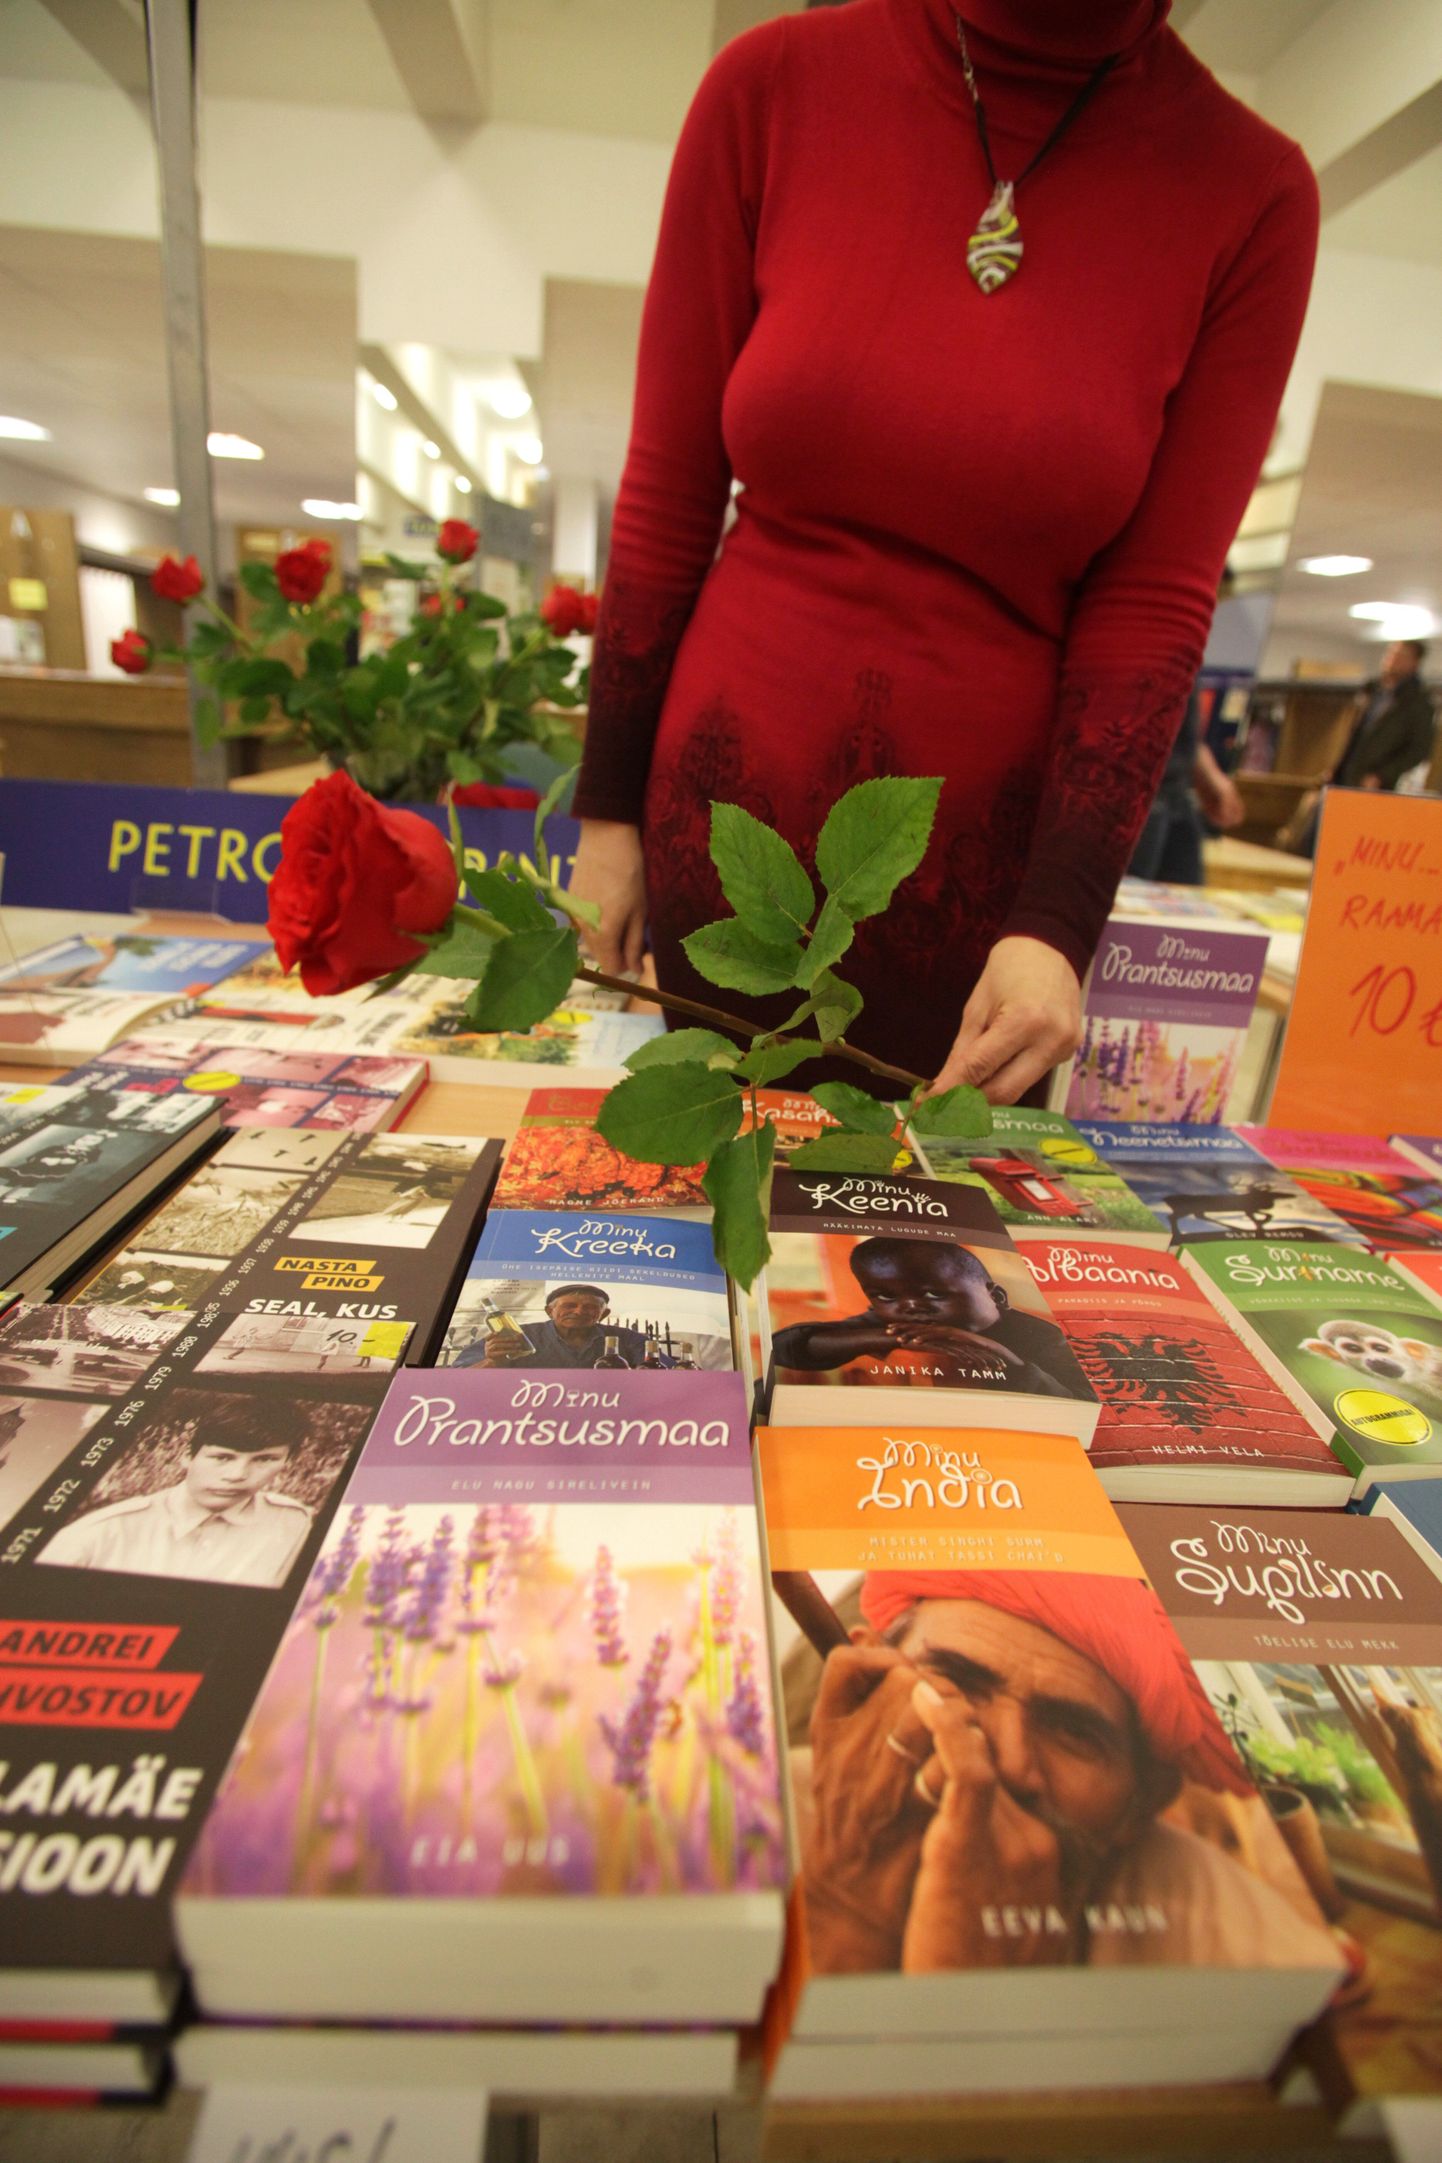 Raamatu ja roosi päev juhib tähelepanu lugemisharjumuse olulisusele.